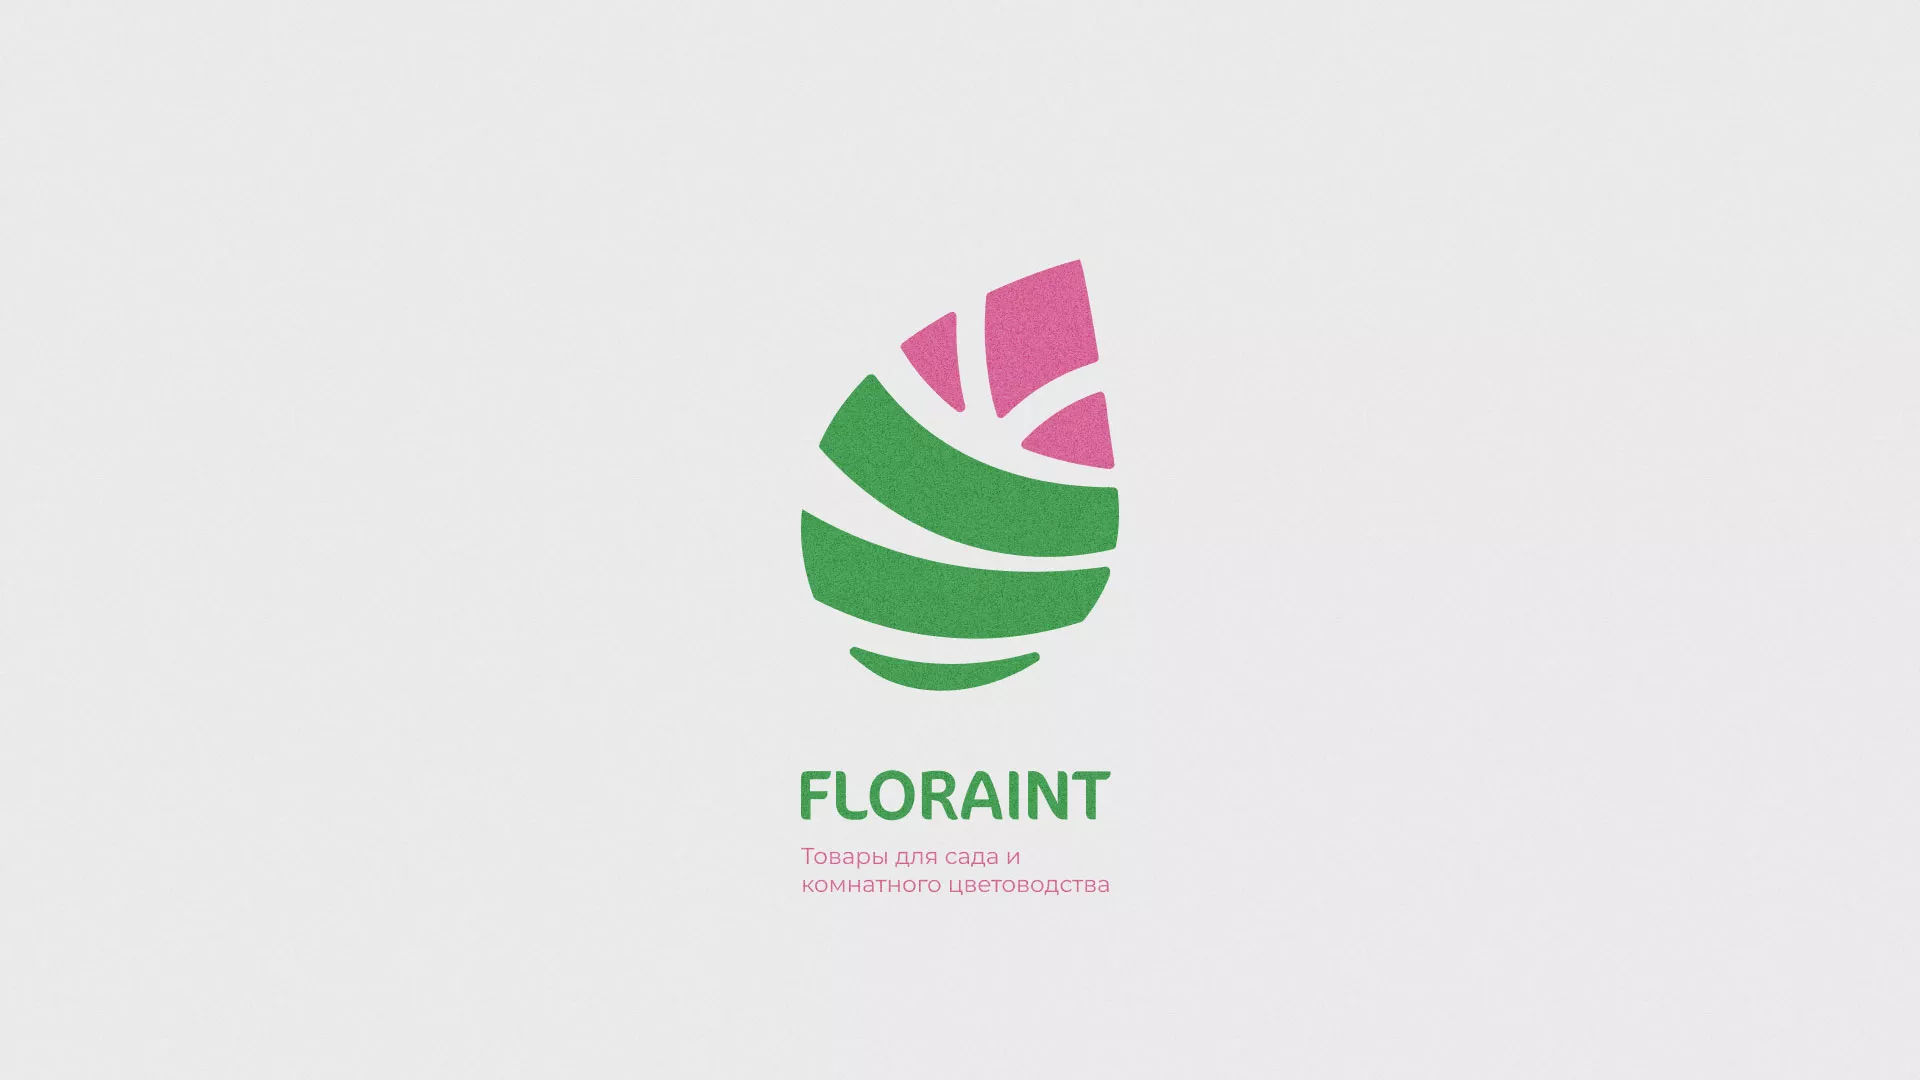 Разработка оформления профиля Instagram для магазина «Floraint» в Болотном